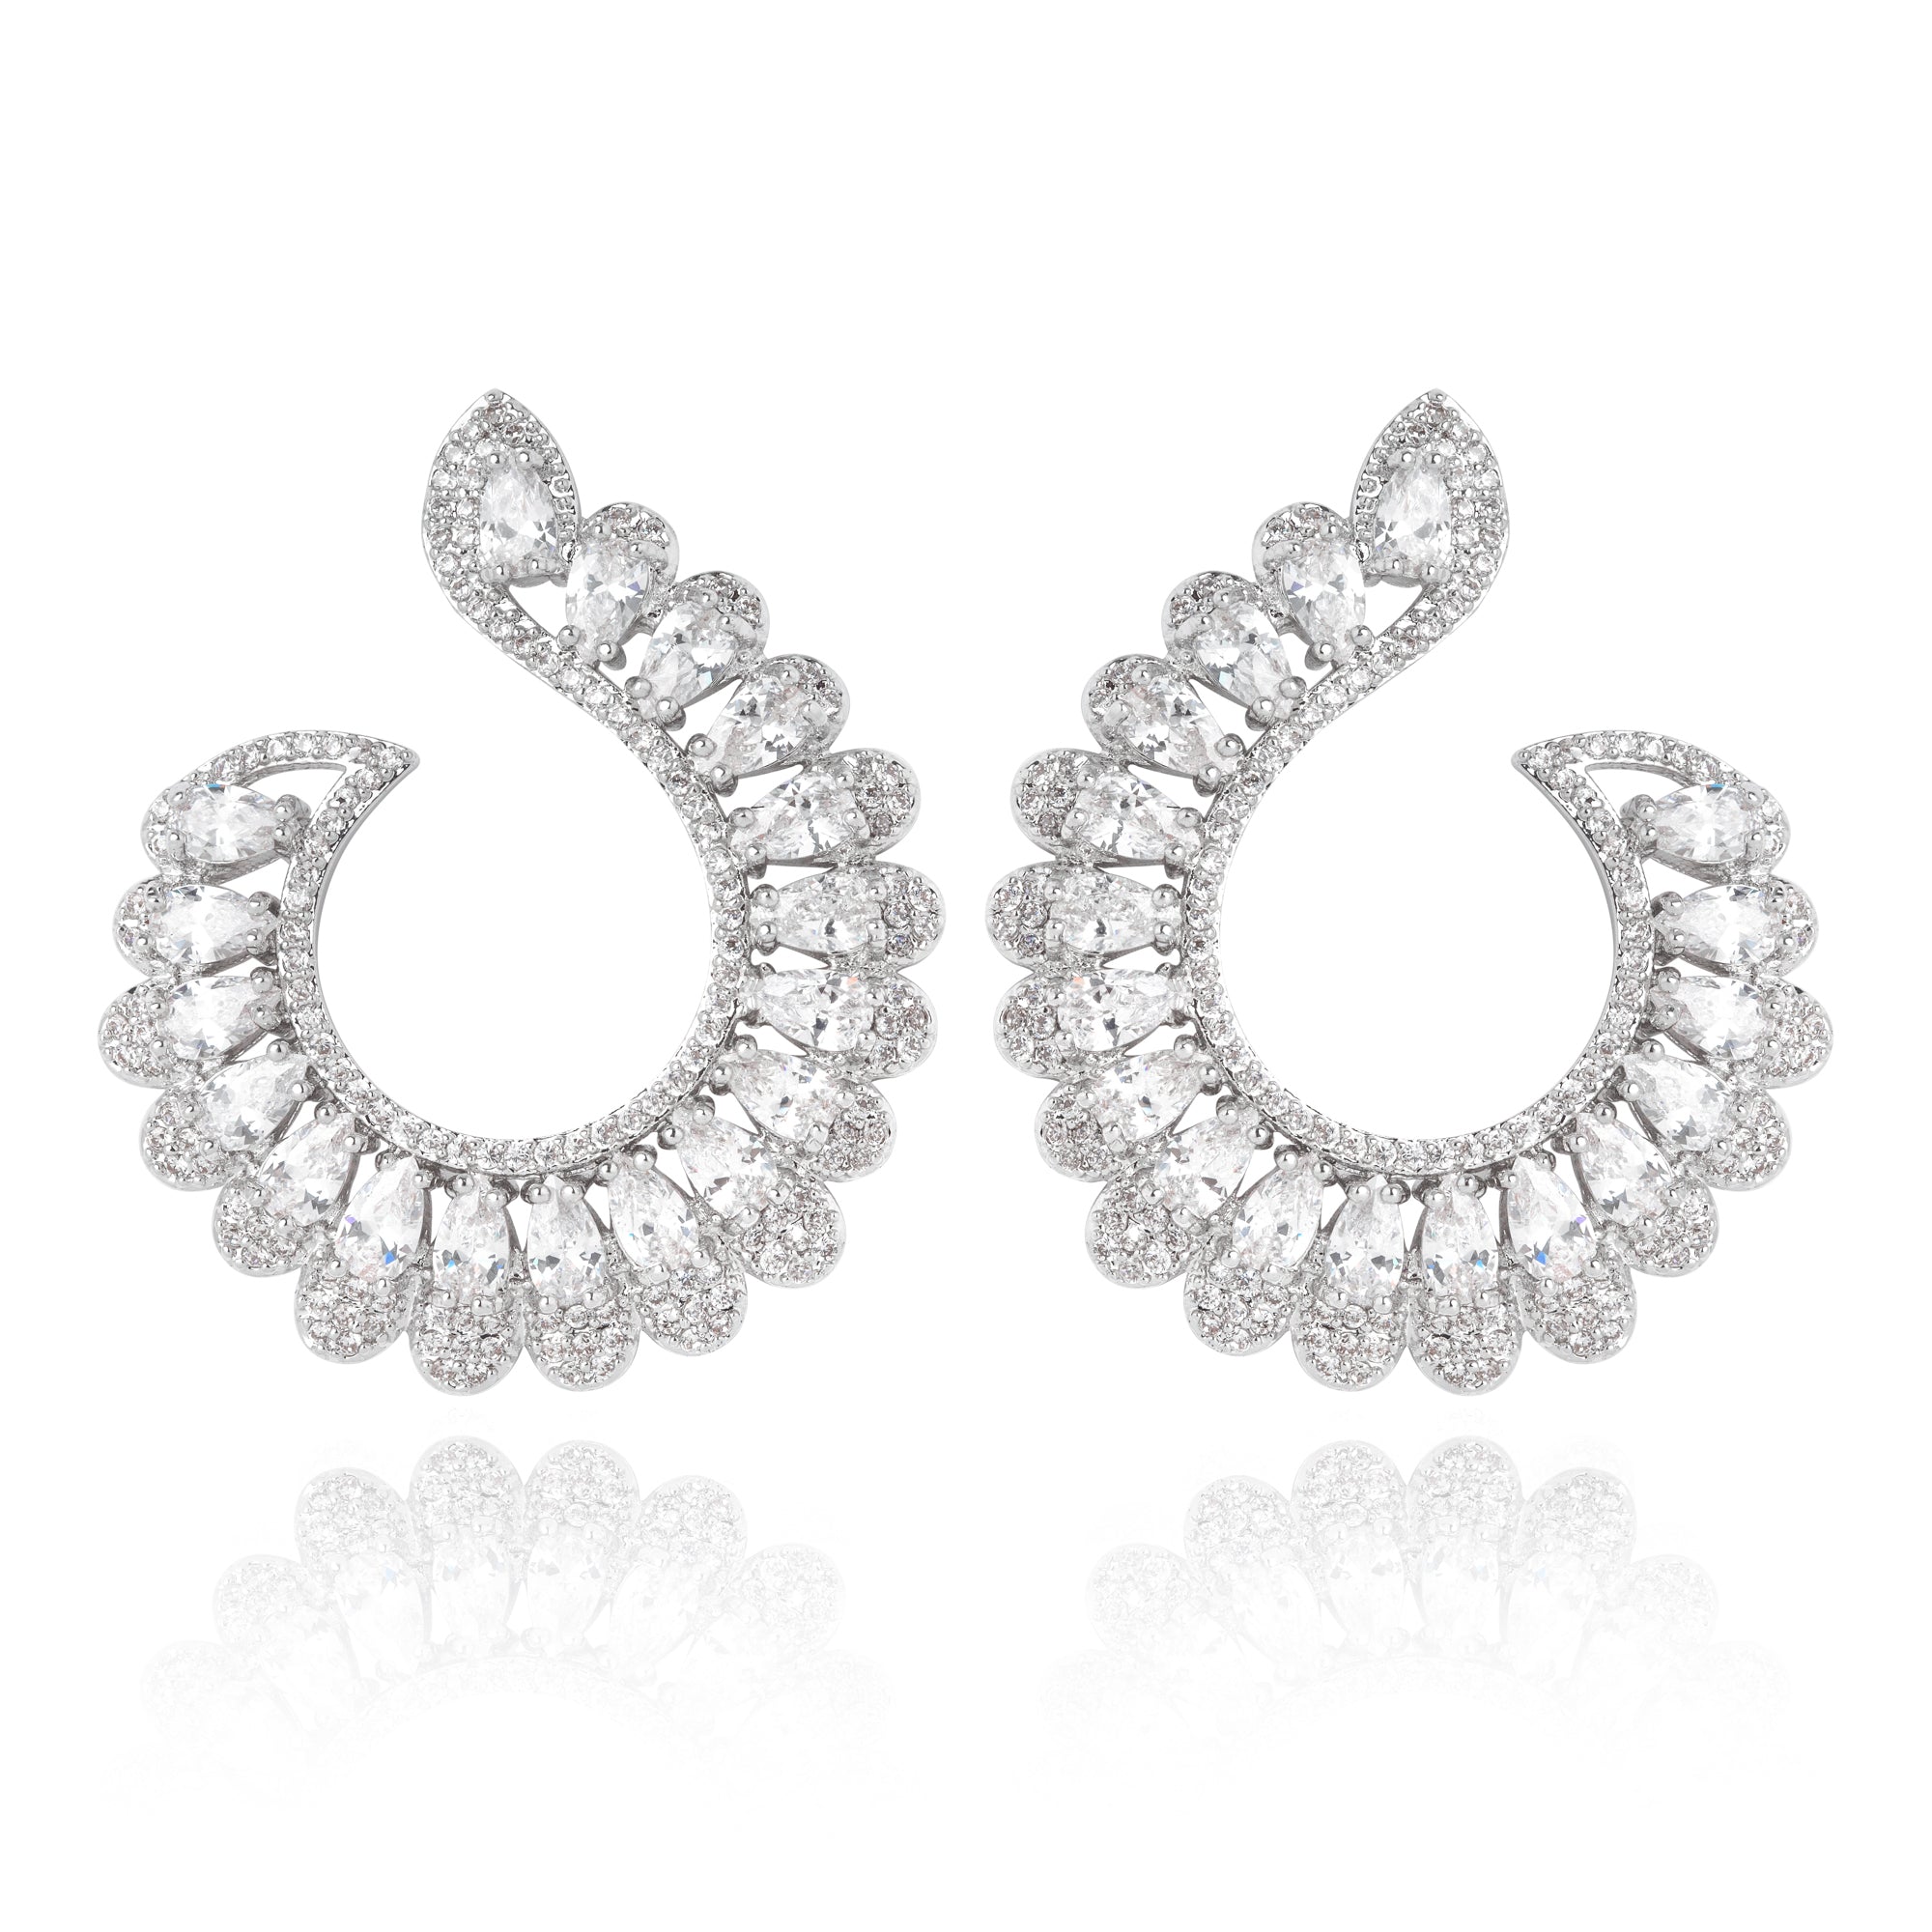 Silver going out earrings, statement earrings, rhodium earrings, silver earrings, wedding earrings, sparkly earrings, shiny earrings